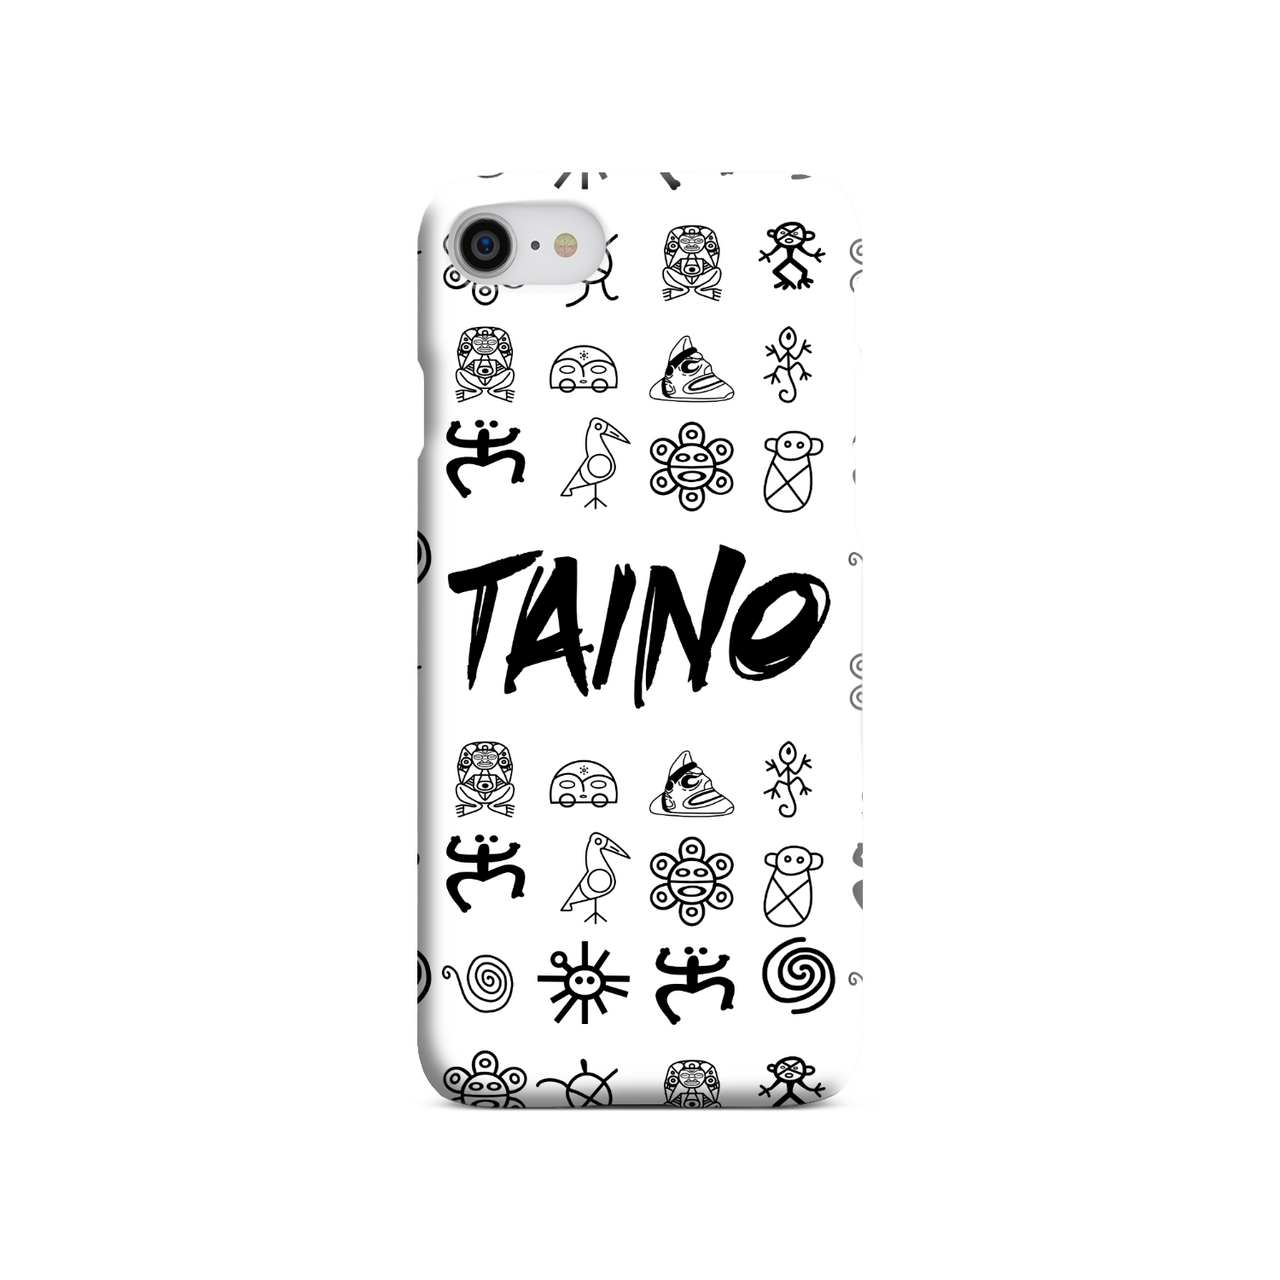 TAINO SYMBOLS Phone Wallet / case – Puerto Rican Pride